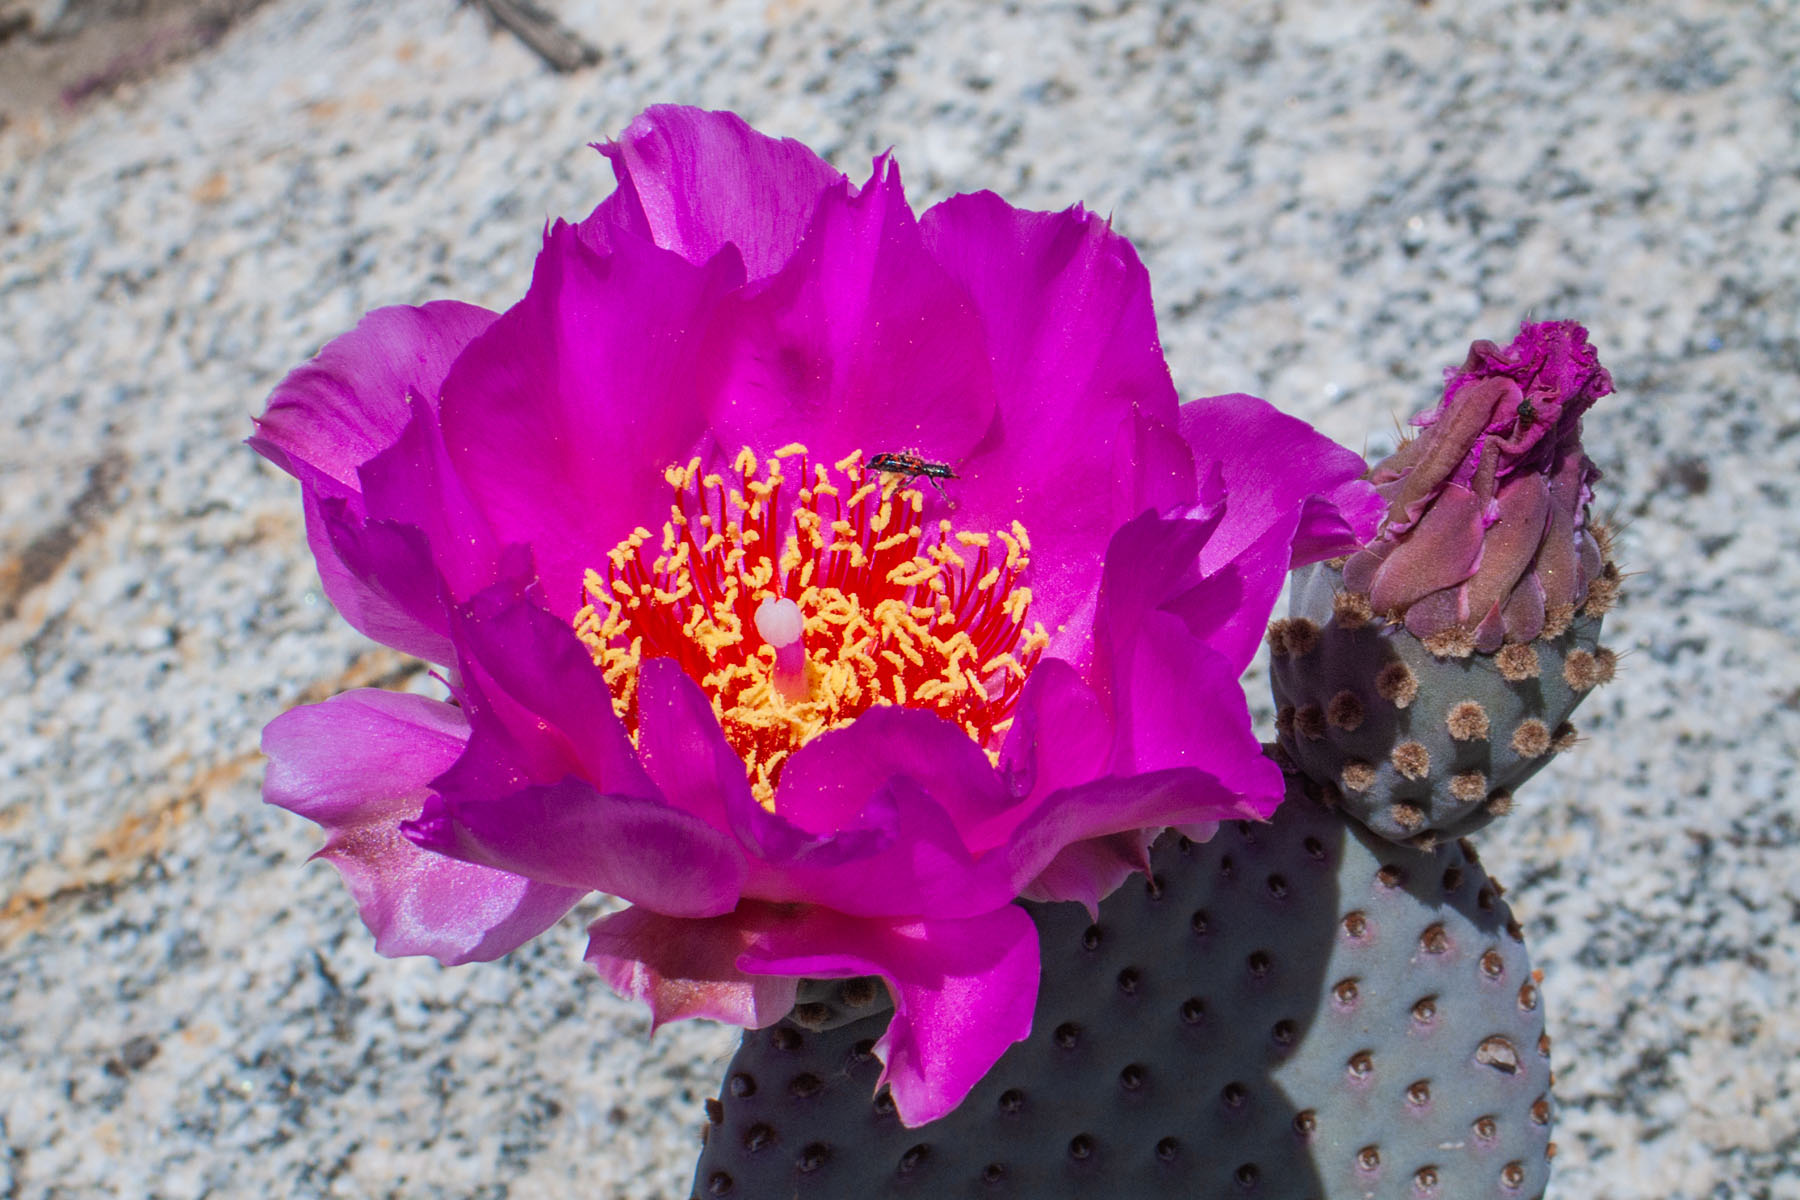 Cactus flower, Borrego Springs, California.  Click for next photo.